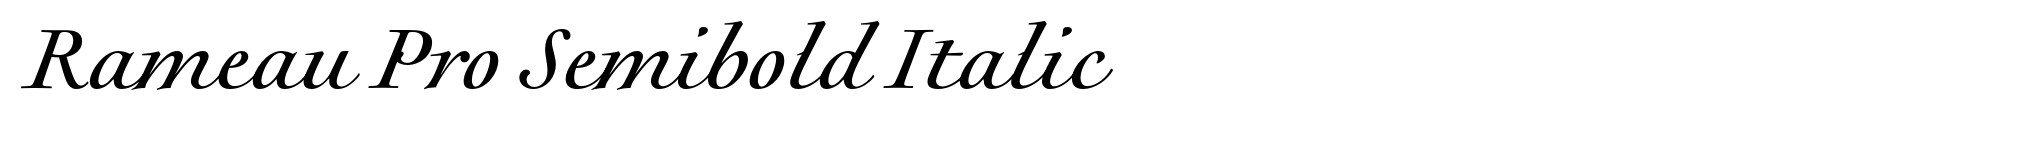 Rameau Pro Semibold Italic image